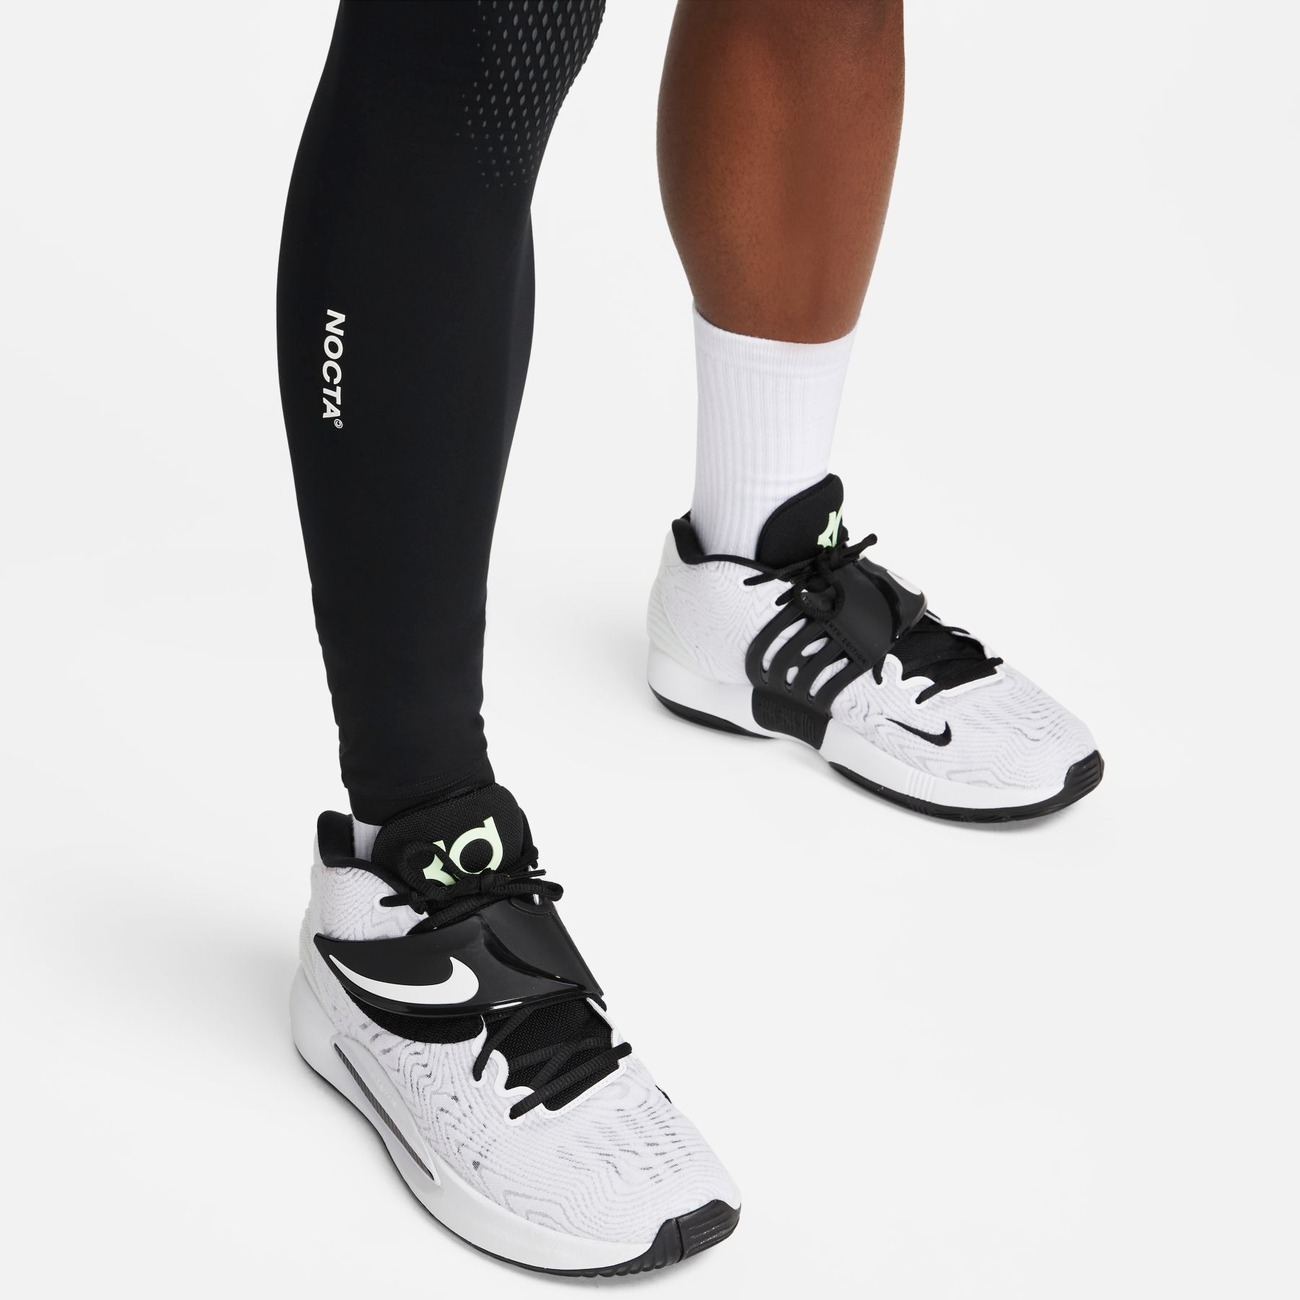 RIGHT SINGLE LEG TGHT - Nike